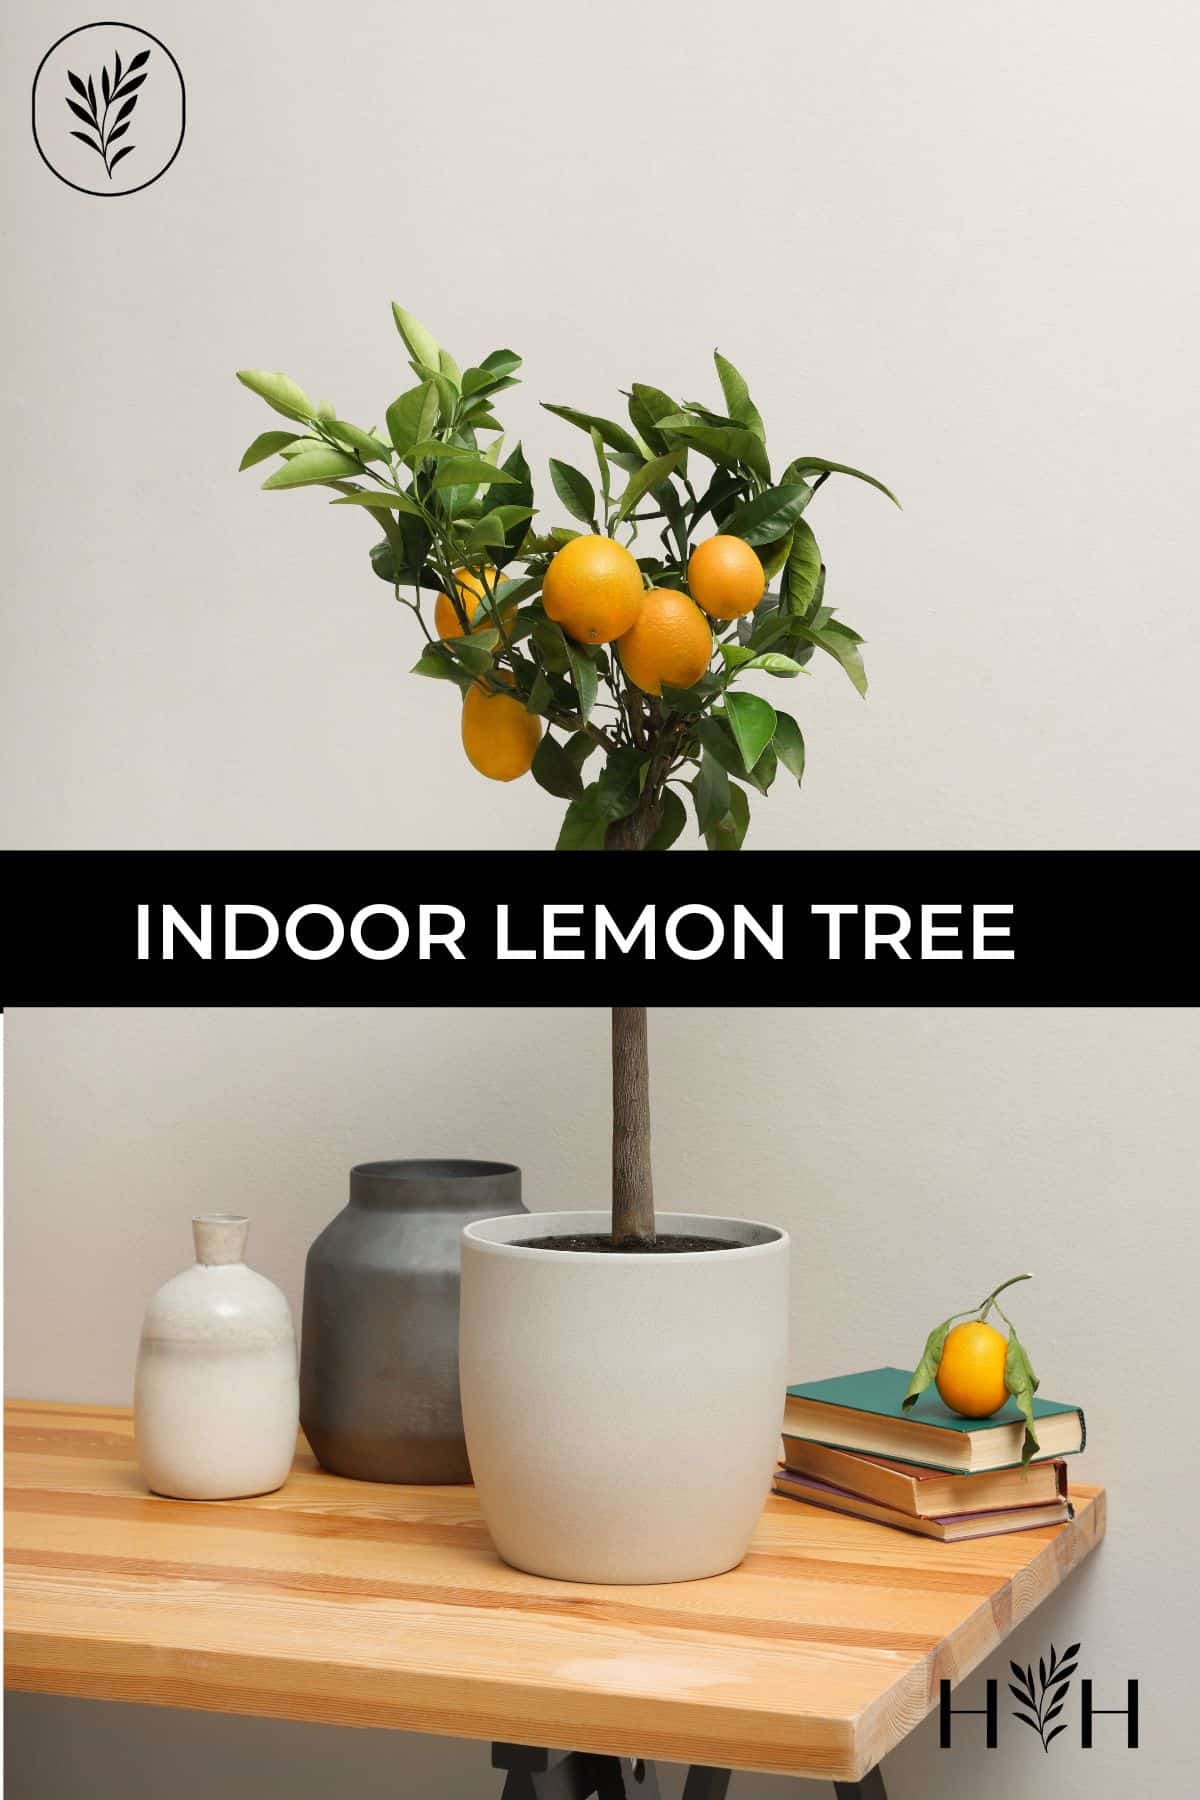 Indoor lemon tree via @home4theharvest